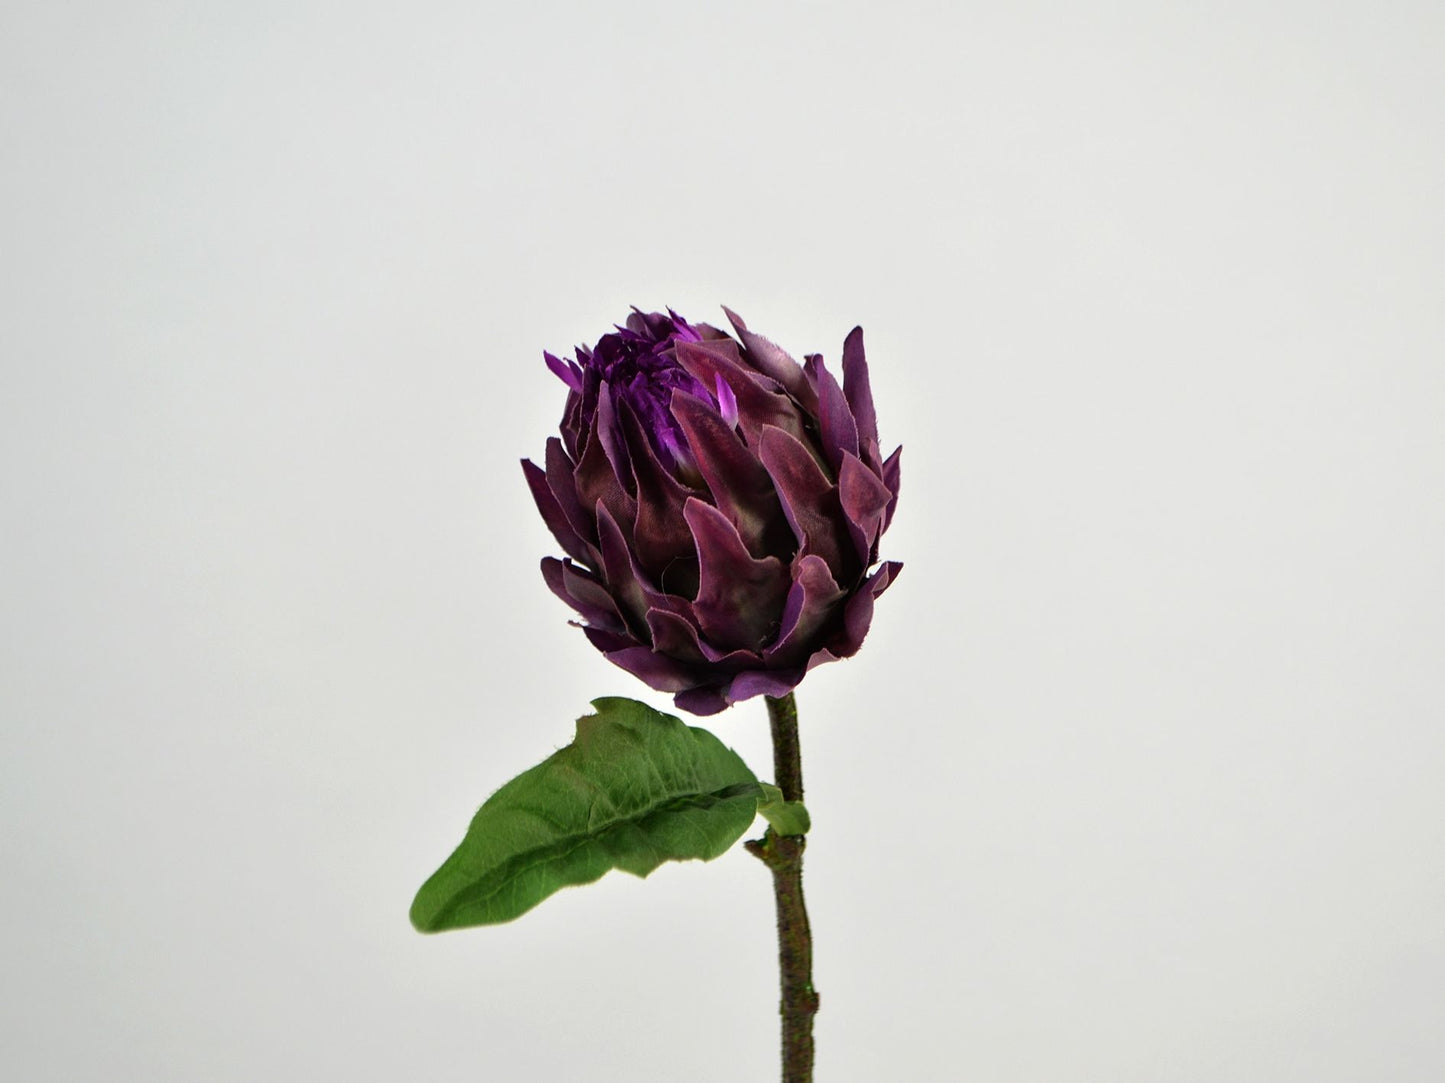 Artiskok blomster hoved i purple